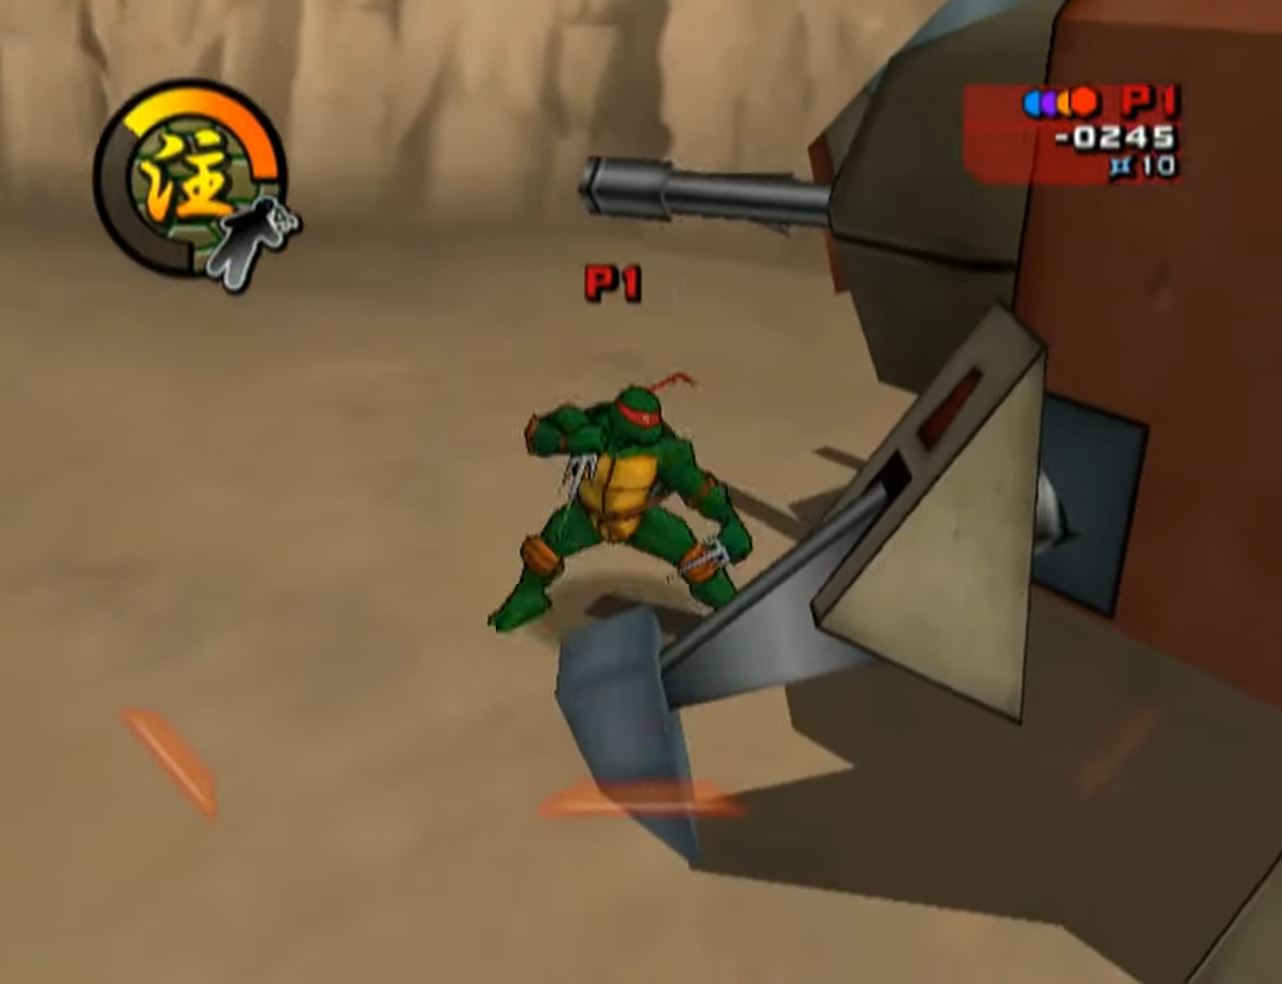 Knockout City Season 7 Adds Teenage Mutant Ninja Turtles - Game